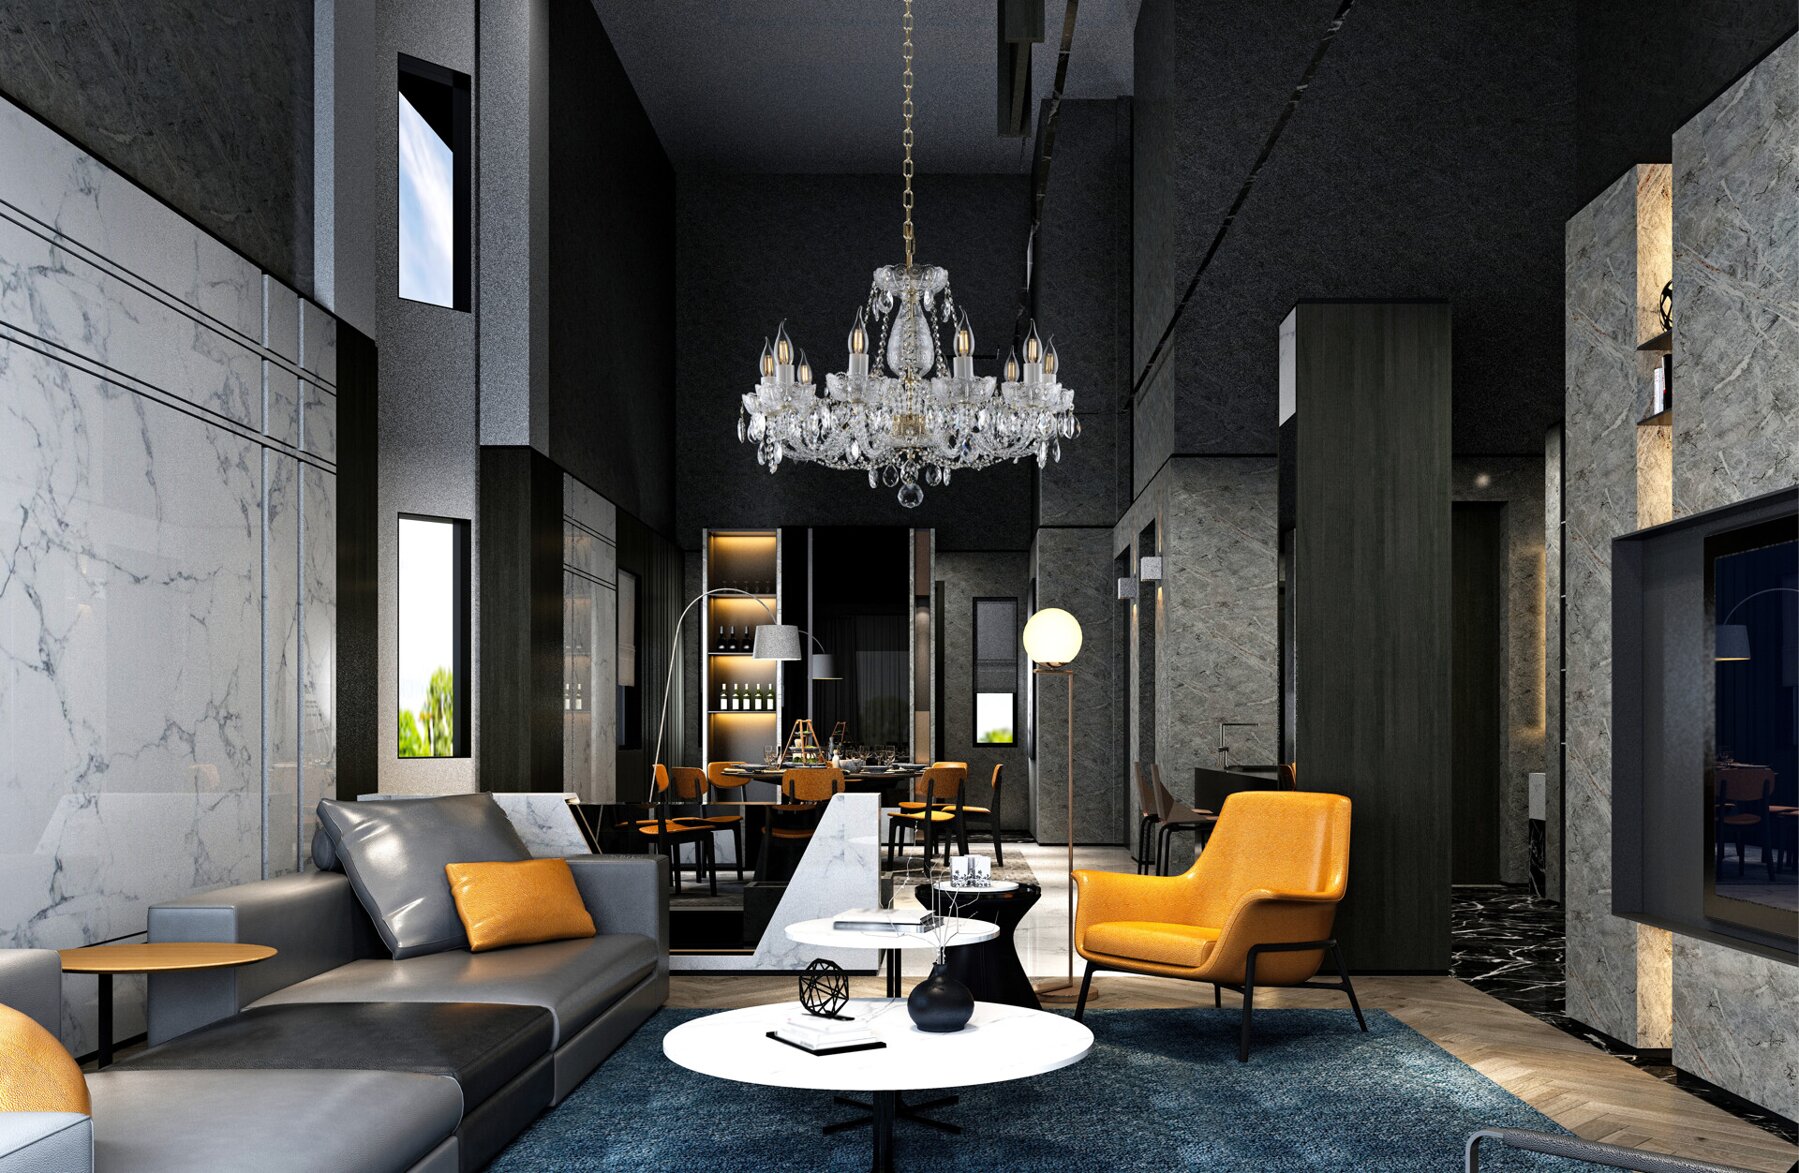 Living Room Crystal Chandeliers  in modern style EL6921001